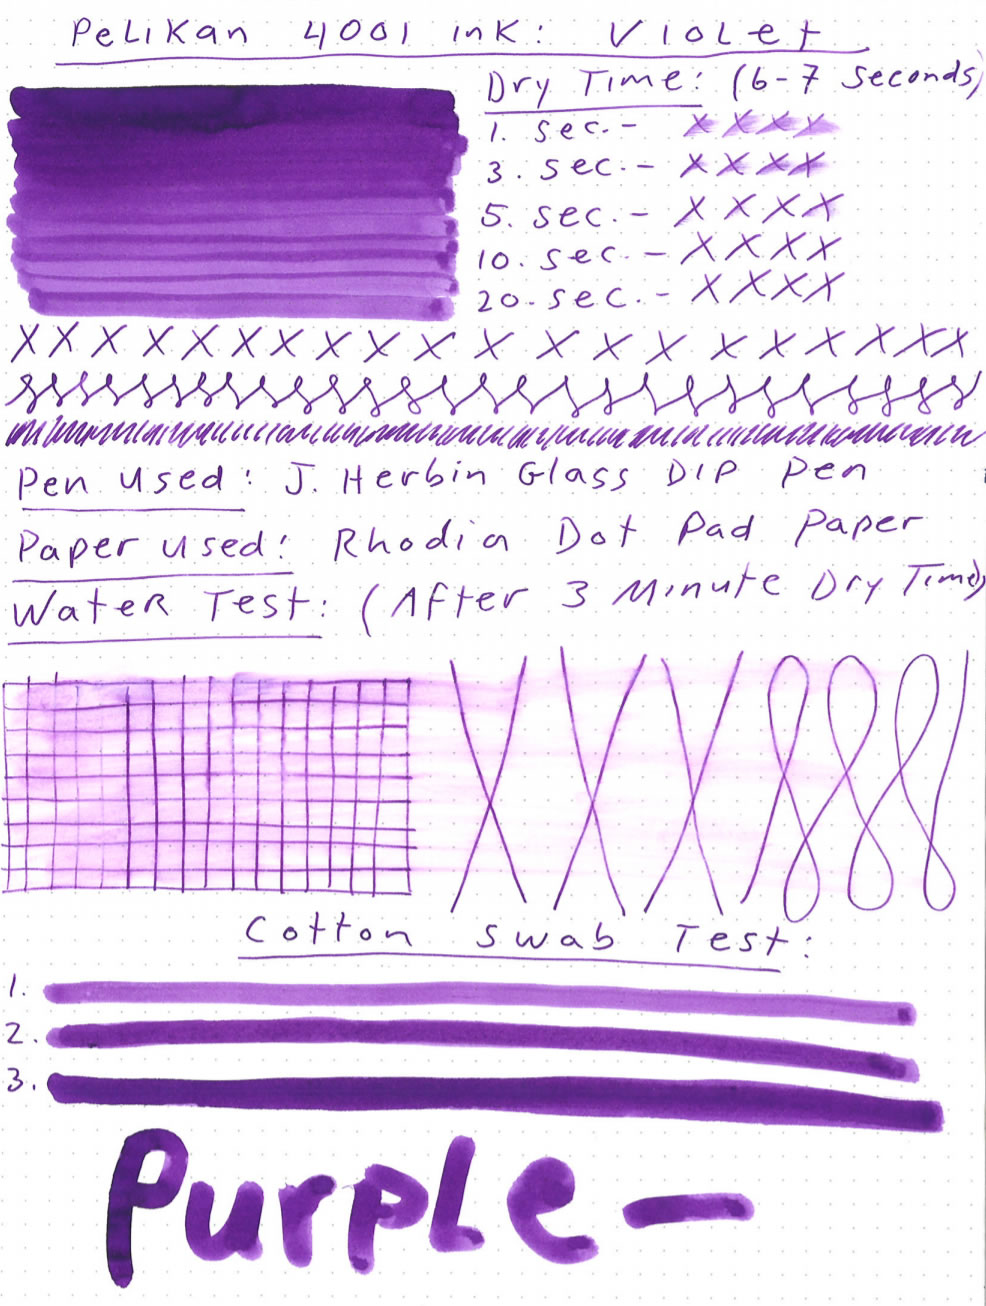 Pelikan 4001 Violet Ink Review